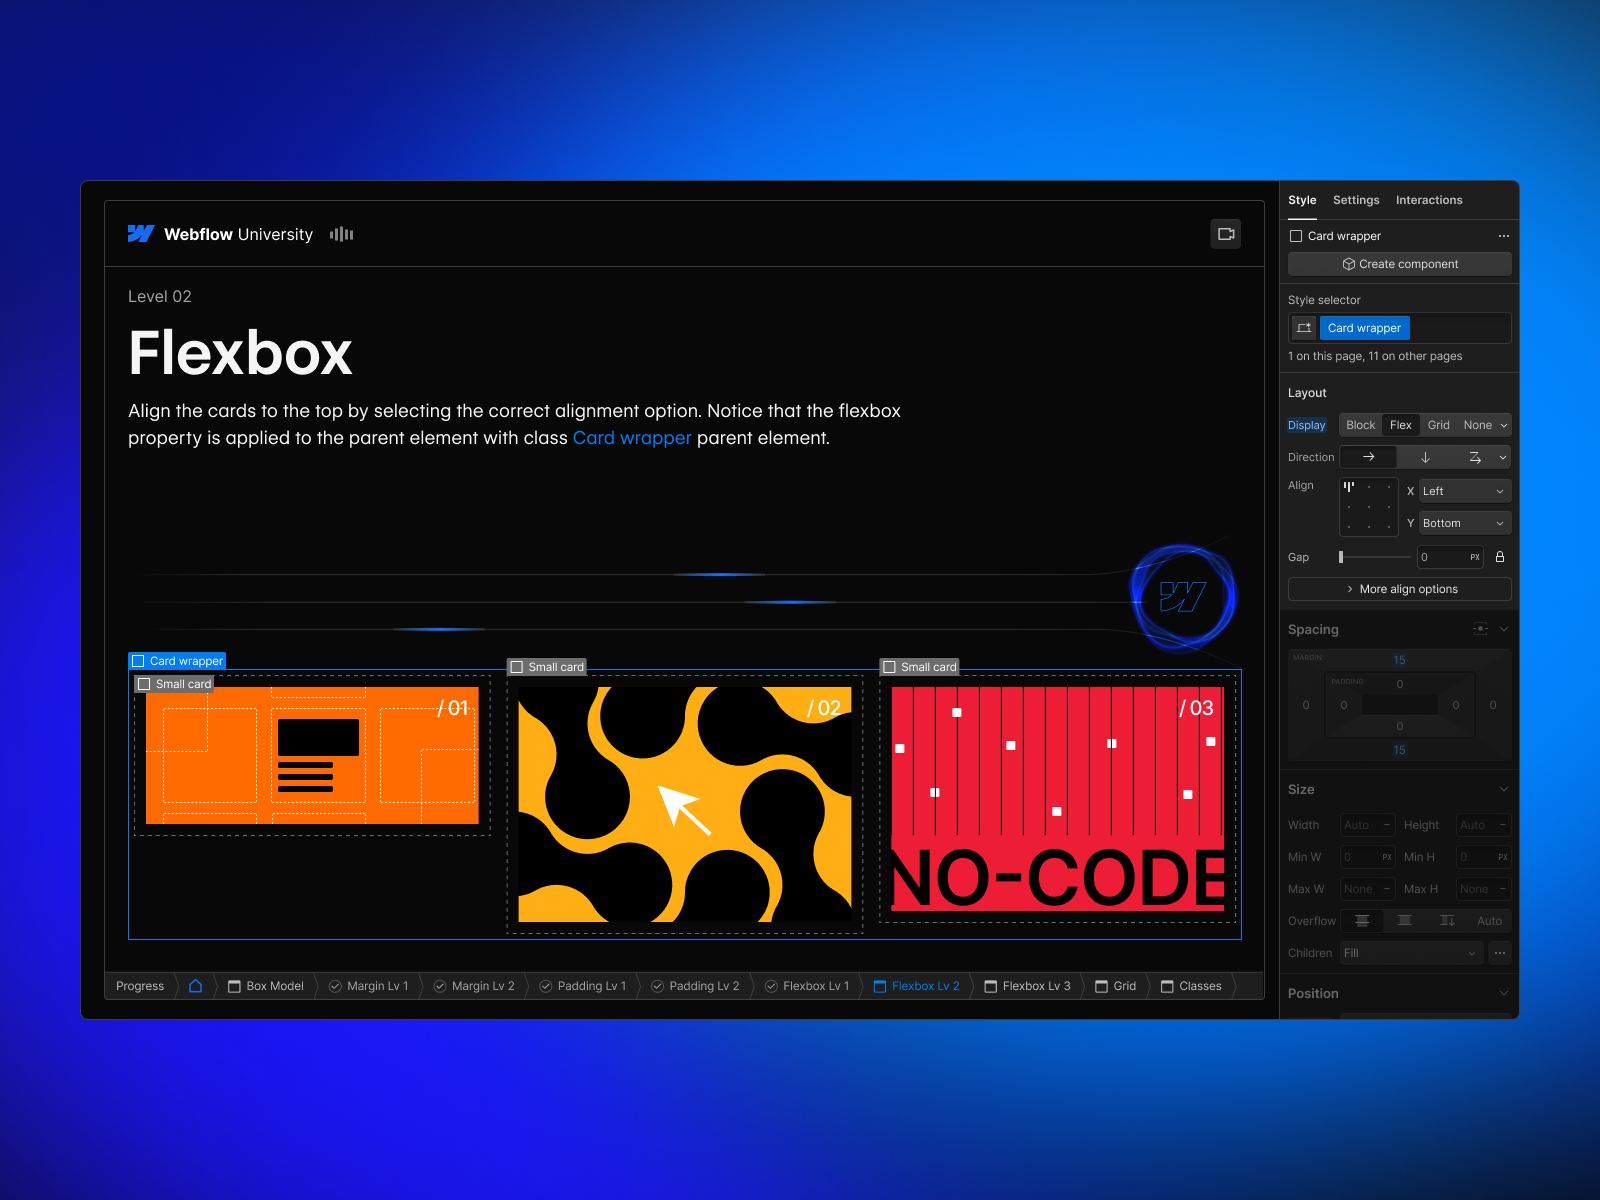 Game Screen: Flexbox